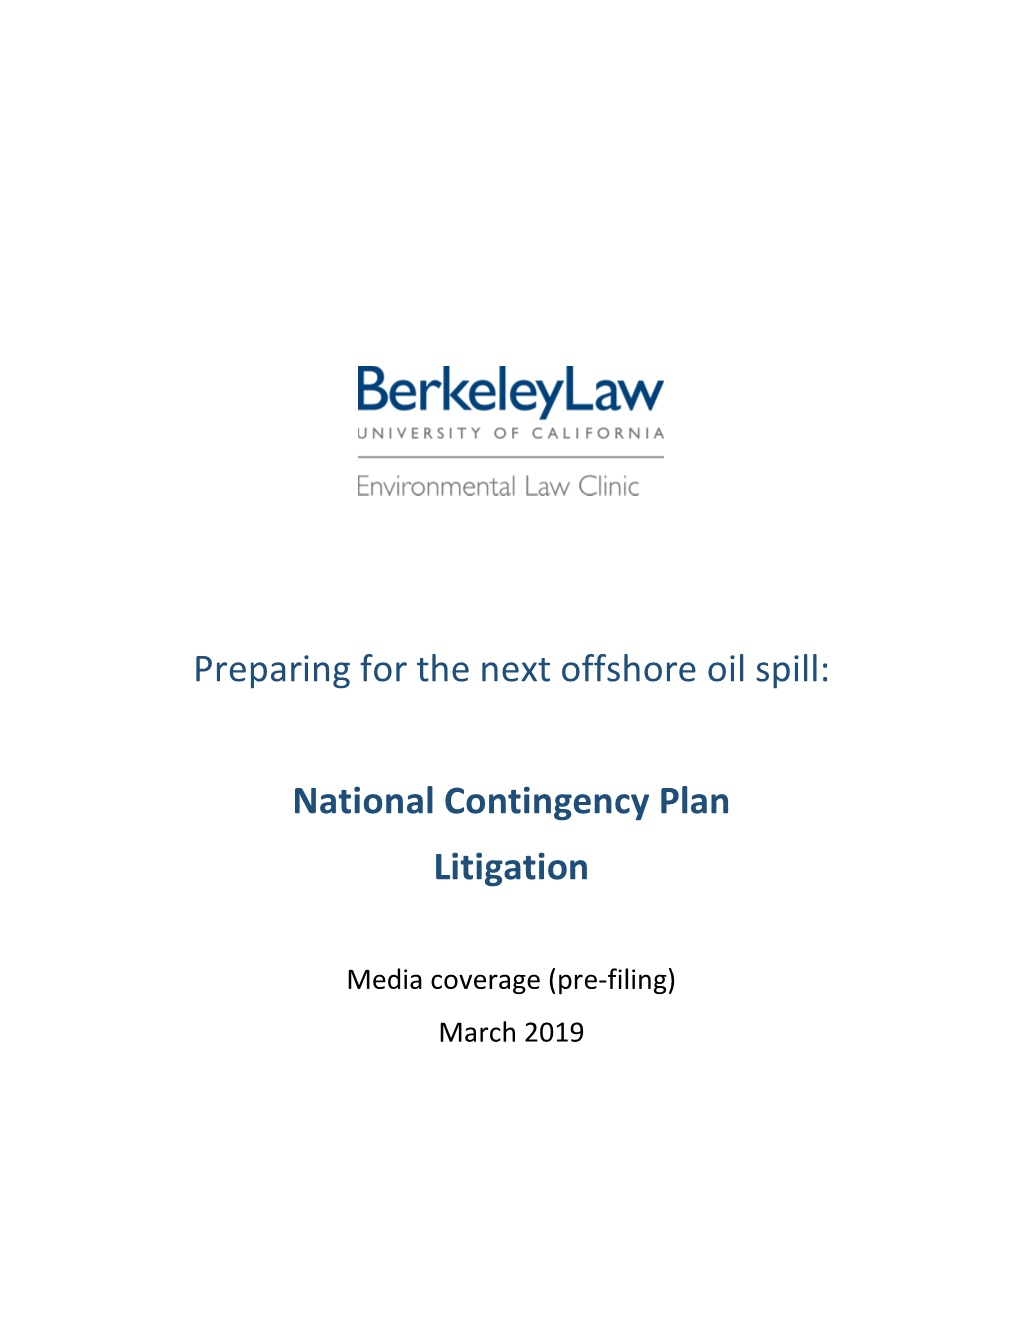 Preparing for the Next Offshore Oil Spill